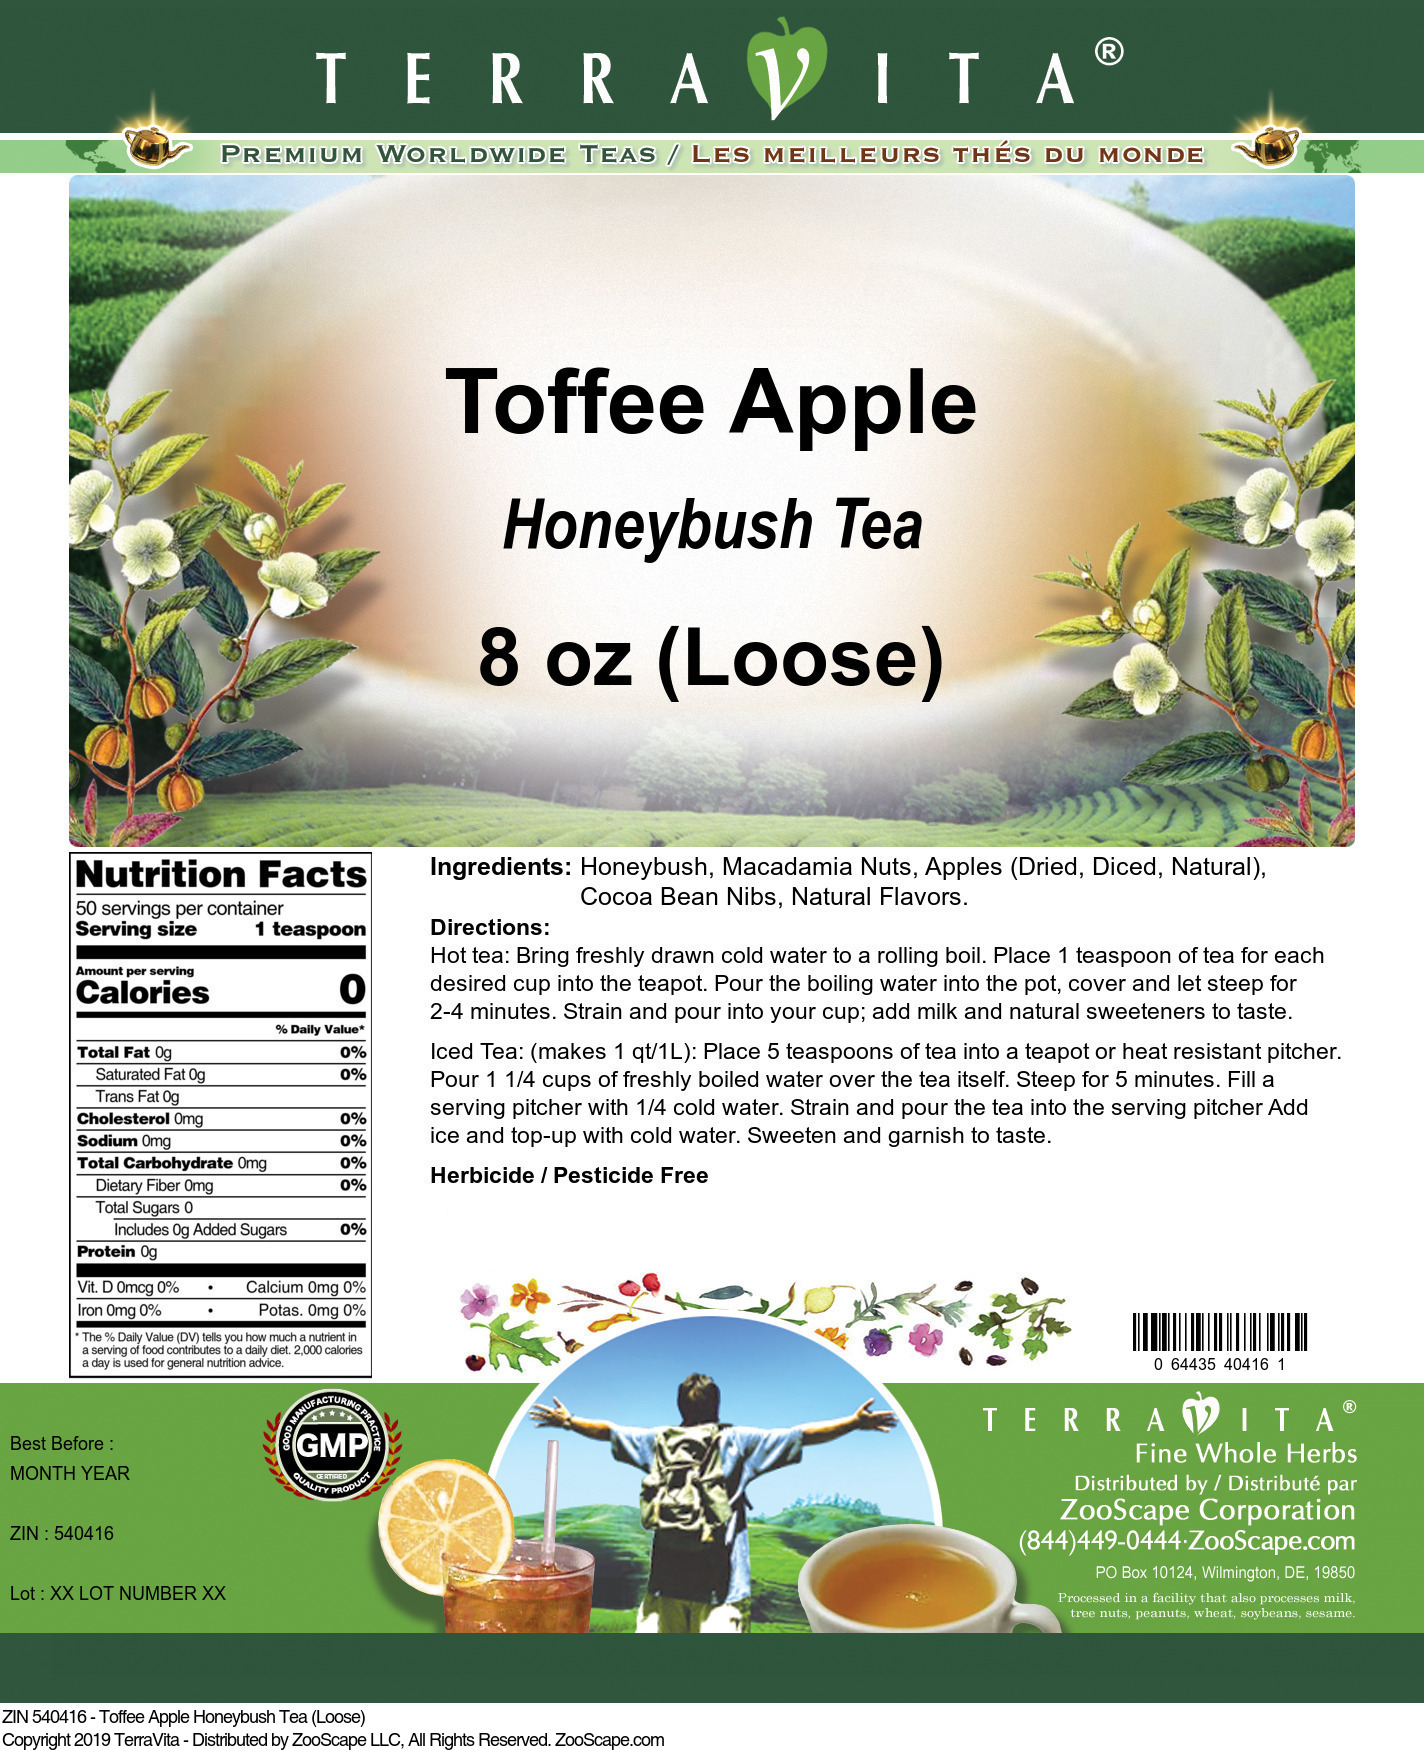 Toffee Apple Honeybush Tea (Loose) - Label